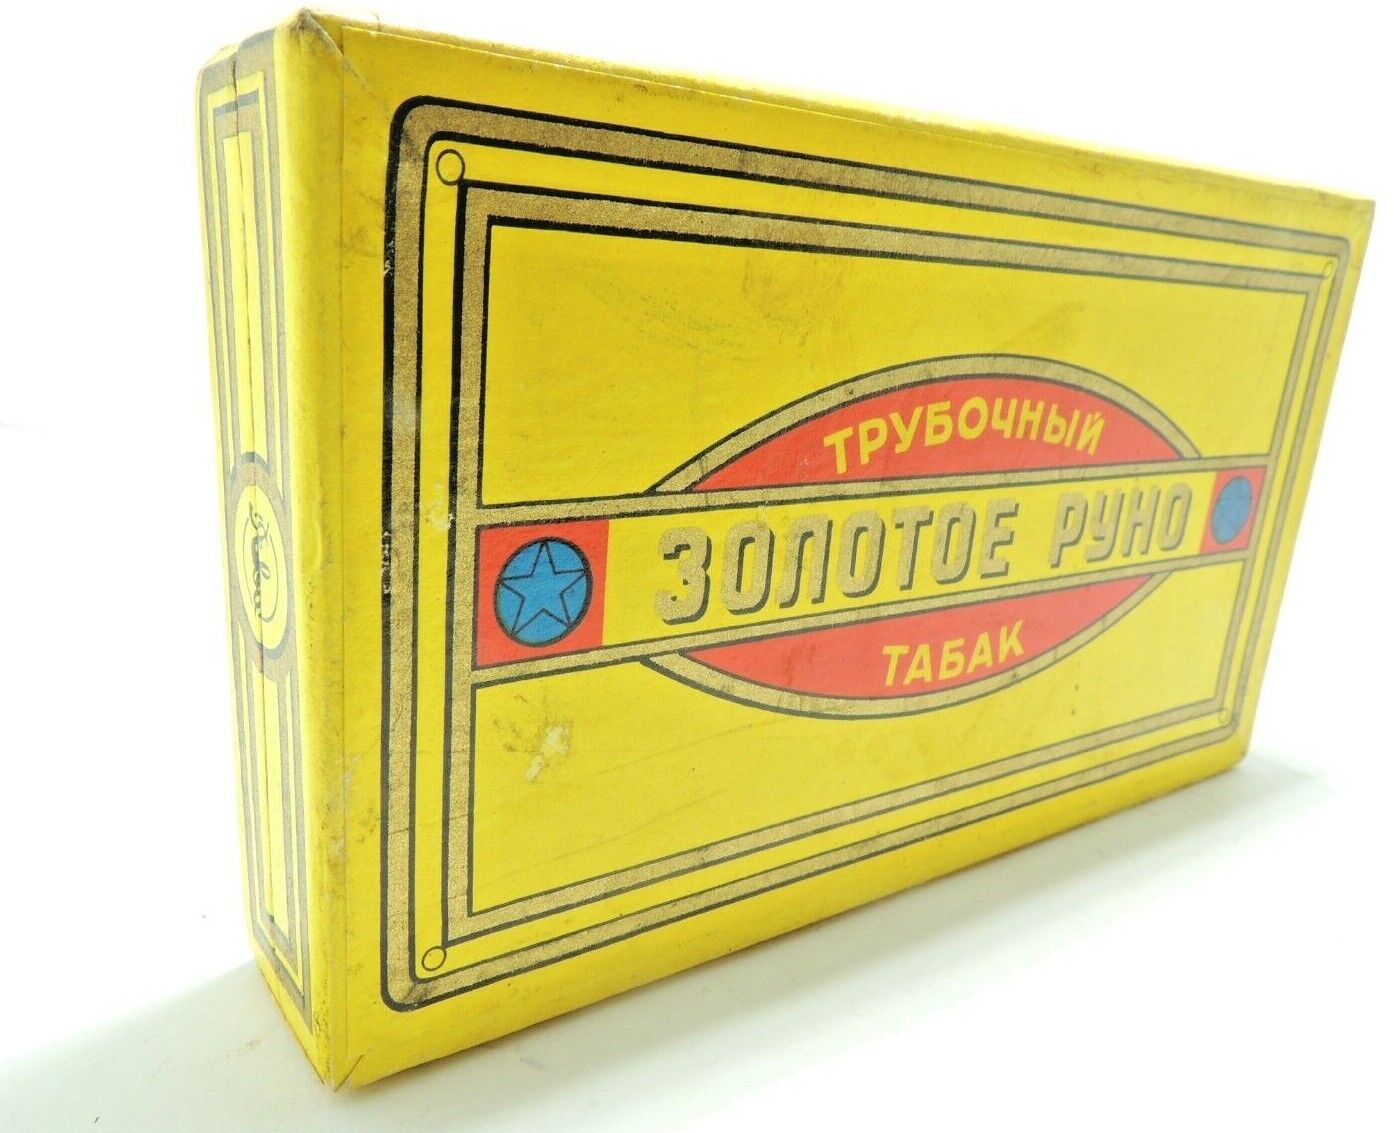 Box USSR Golden Fleece Moscow Java 1955 premium pipe tobacco top grade SOVIET 